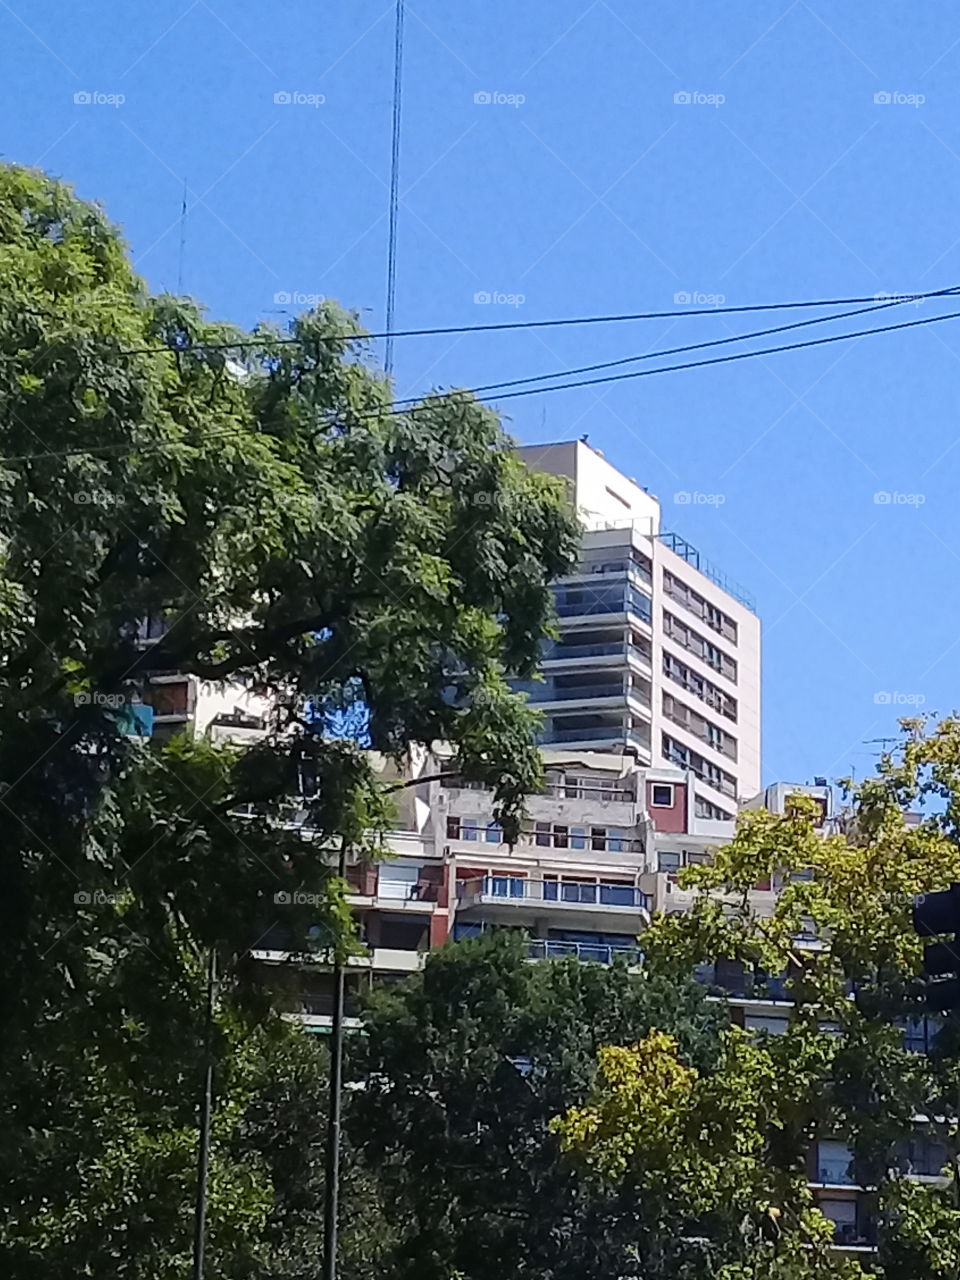 moderno edificio urbano destinado a oficinas comerciales destacando entre las copas de árboles y recortado contra un cielo de verano despejado.